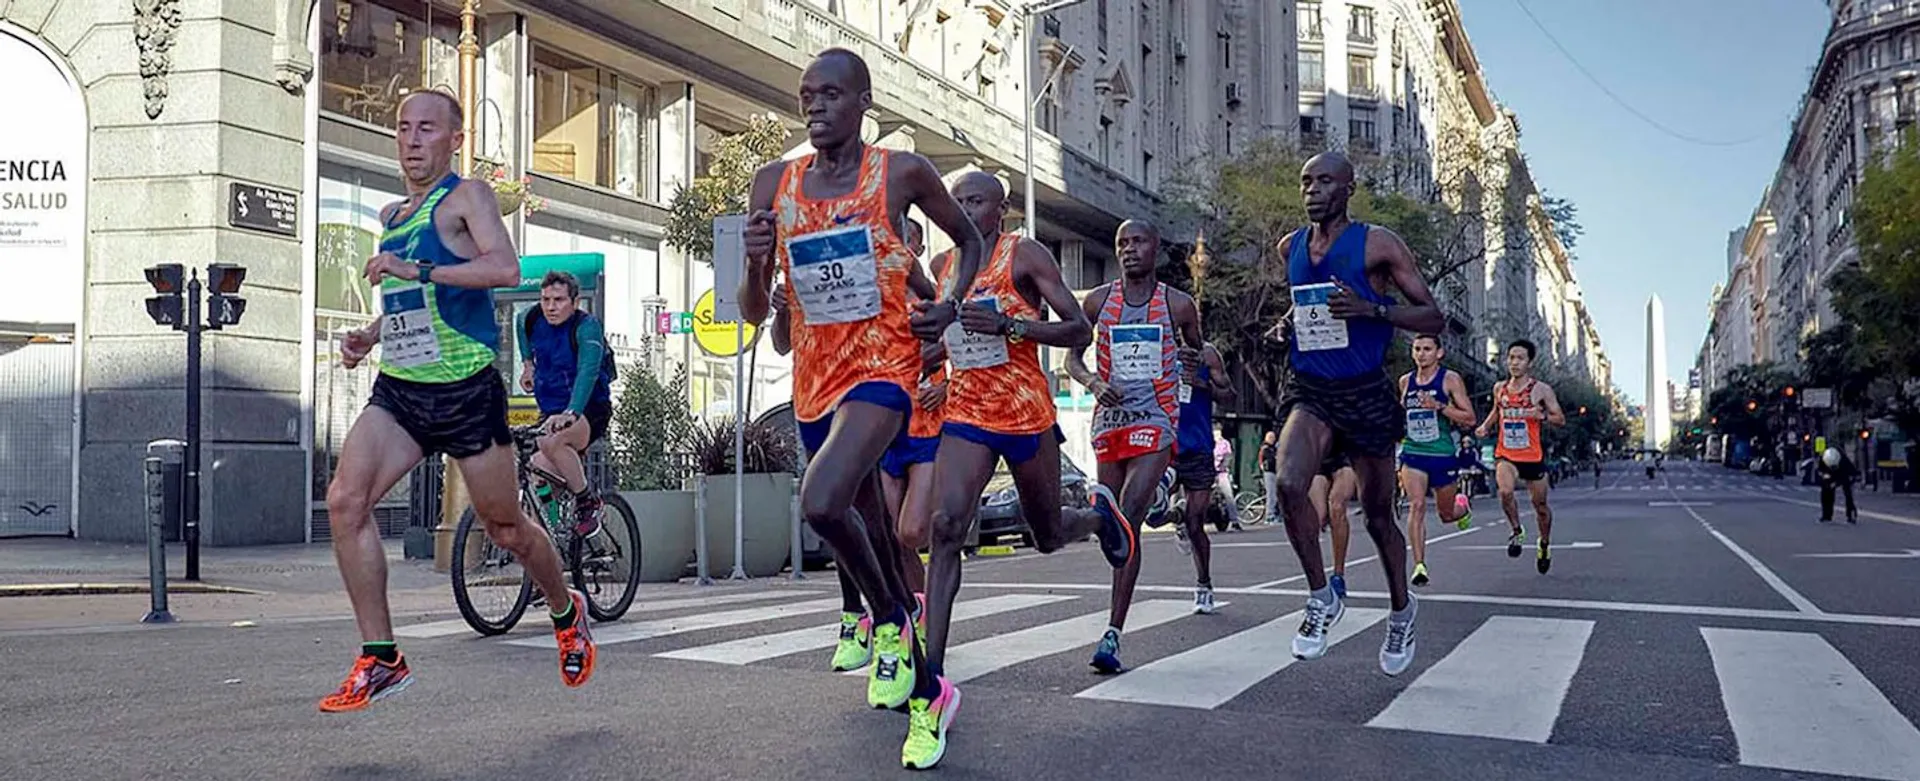 Buenos Aires International Marathon